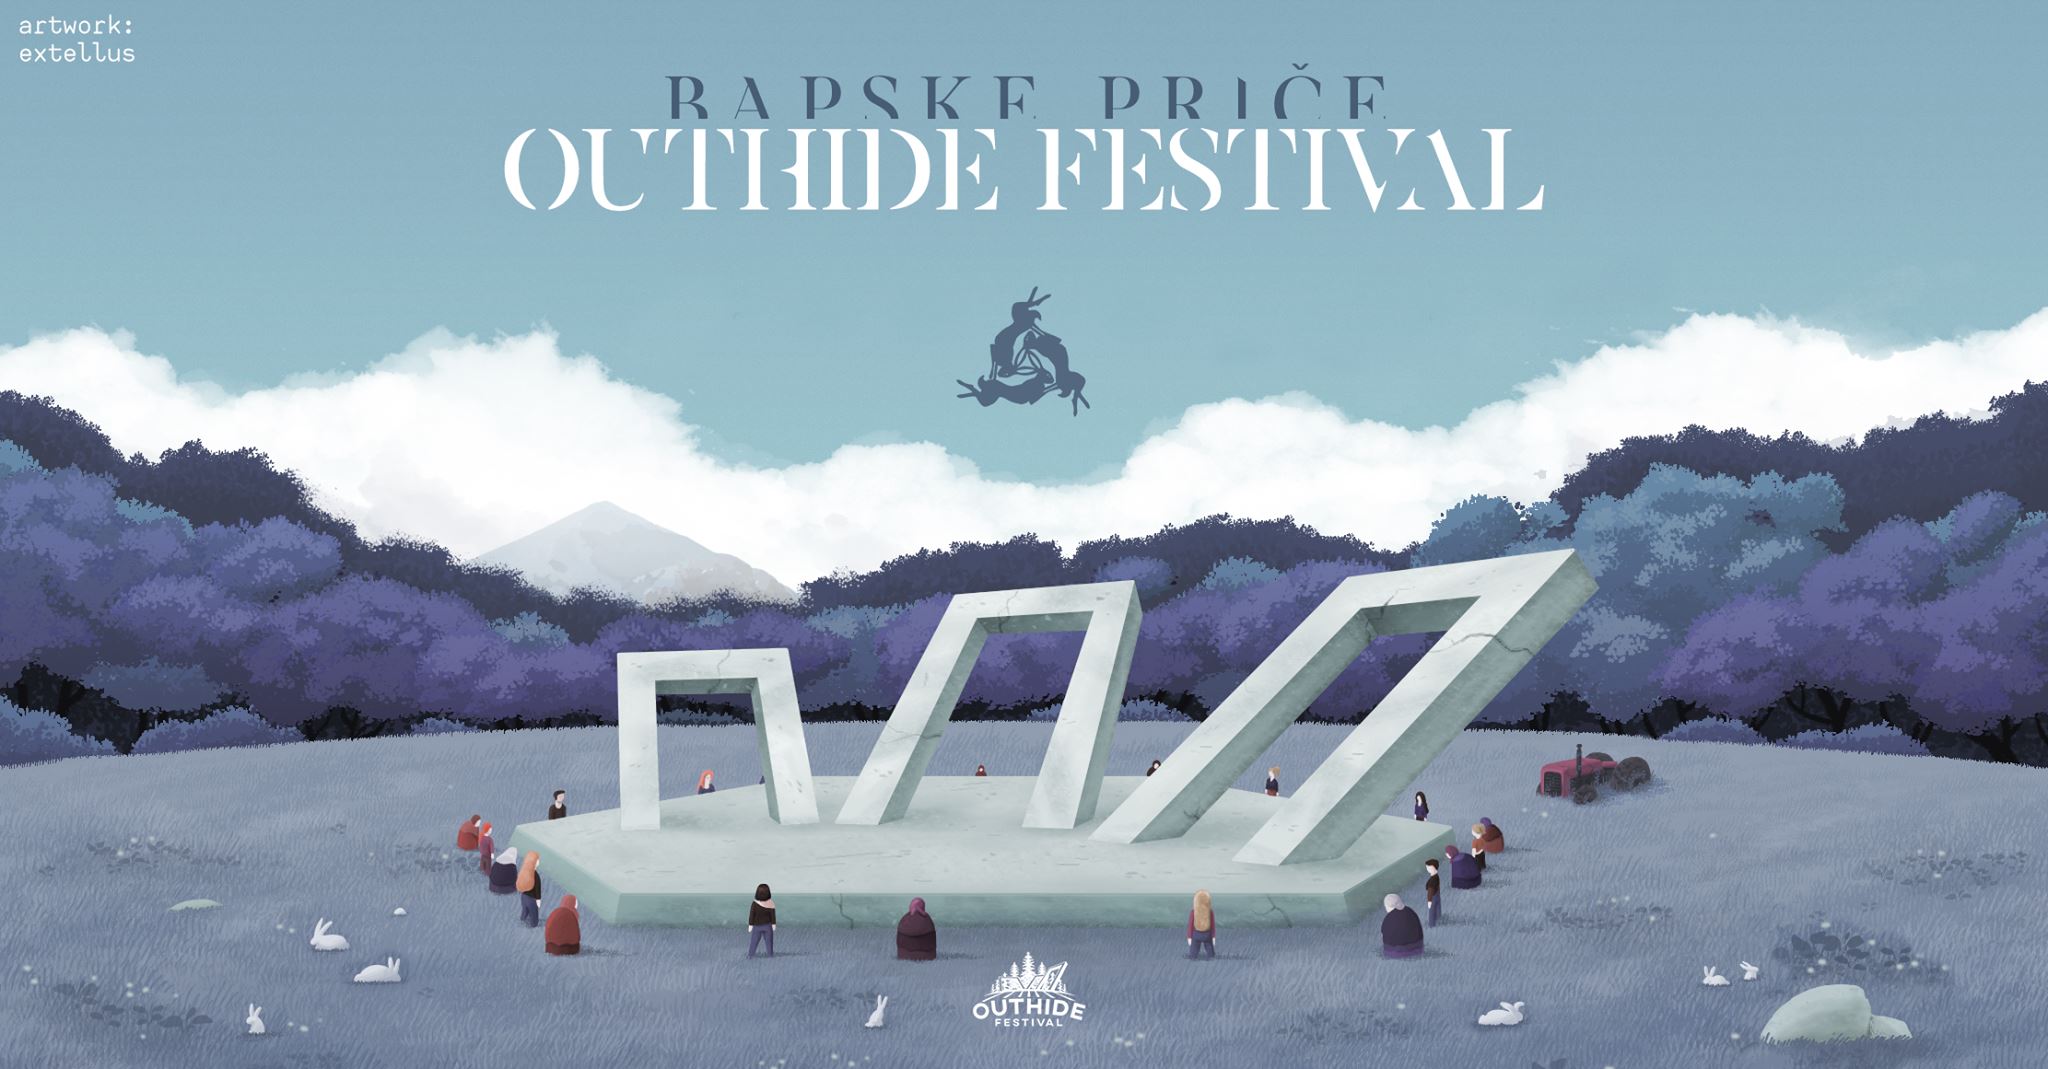 Outhide Festival | Bapske priče 26 – 27.07.2019.Kraljevica